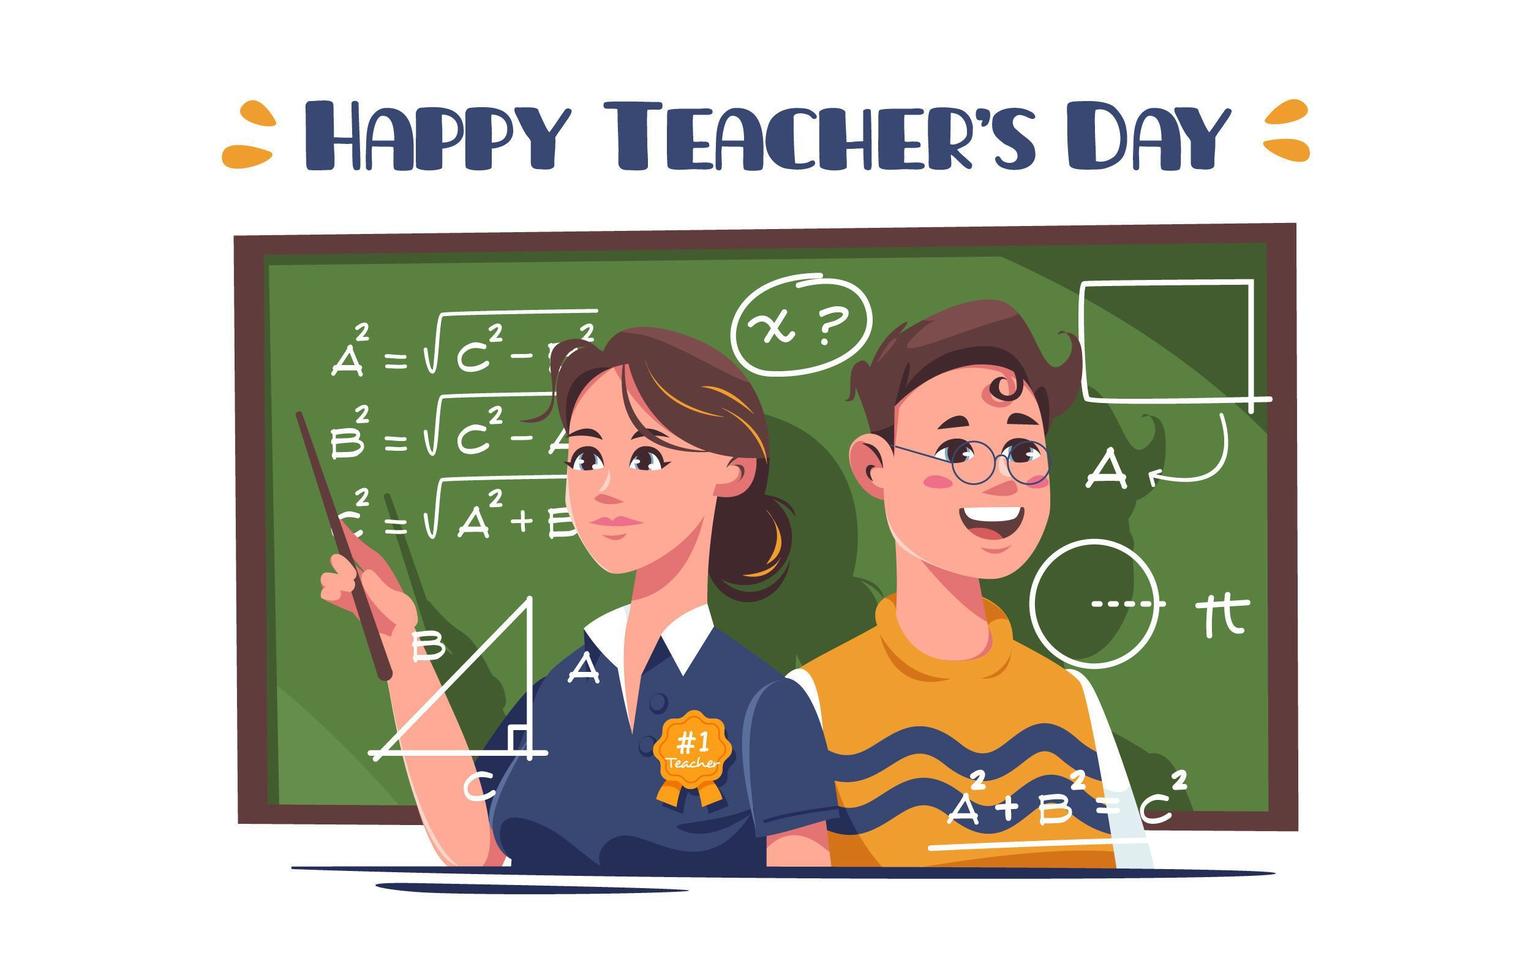 lärarens dag festlighet med två glada lärare vektor